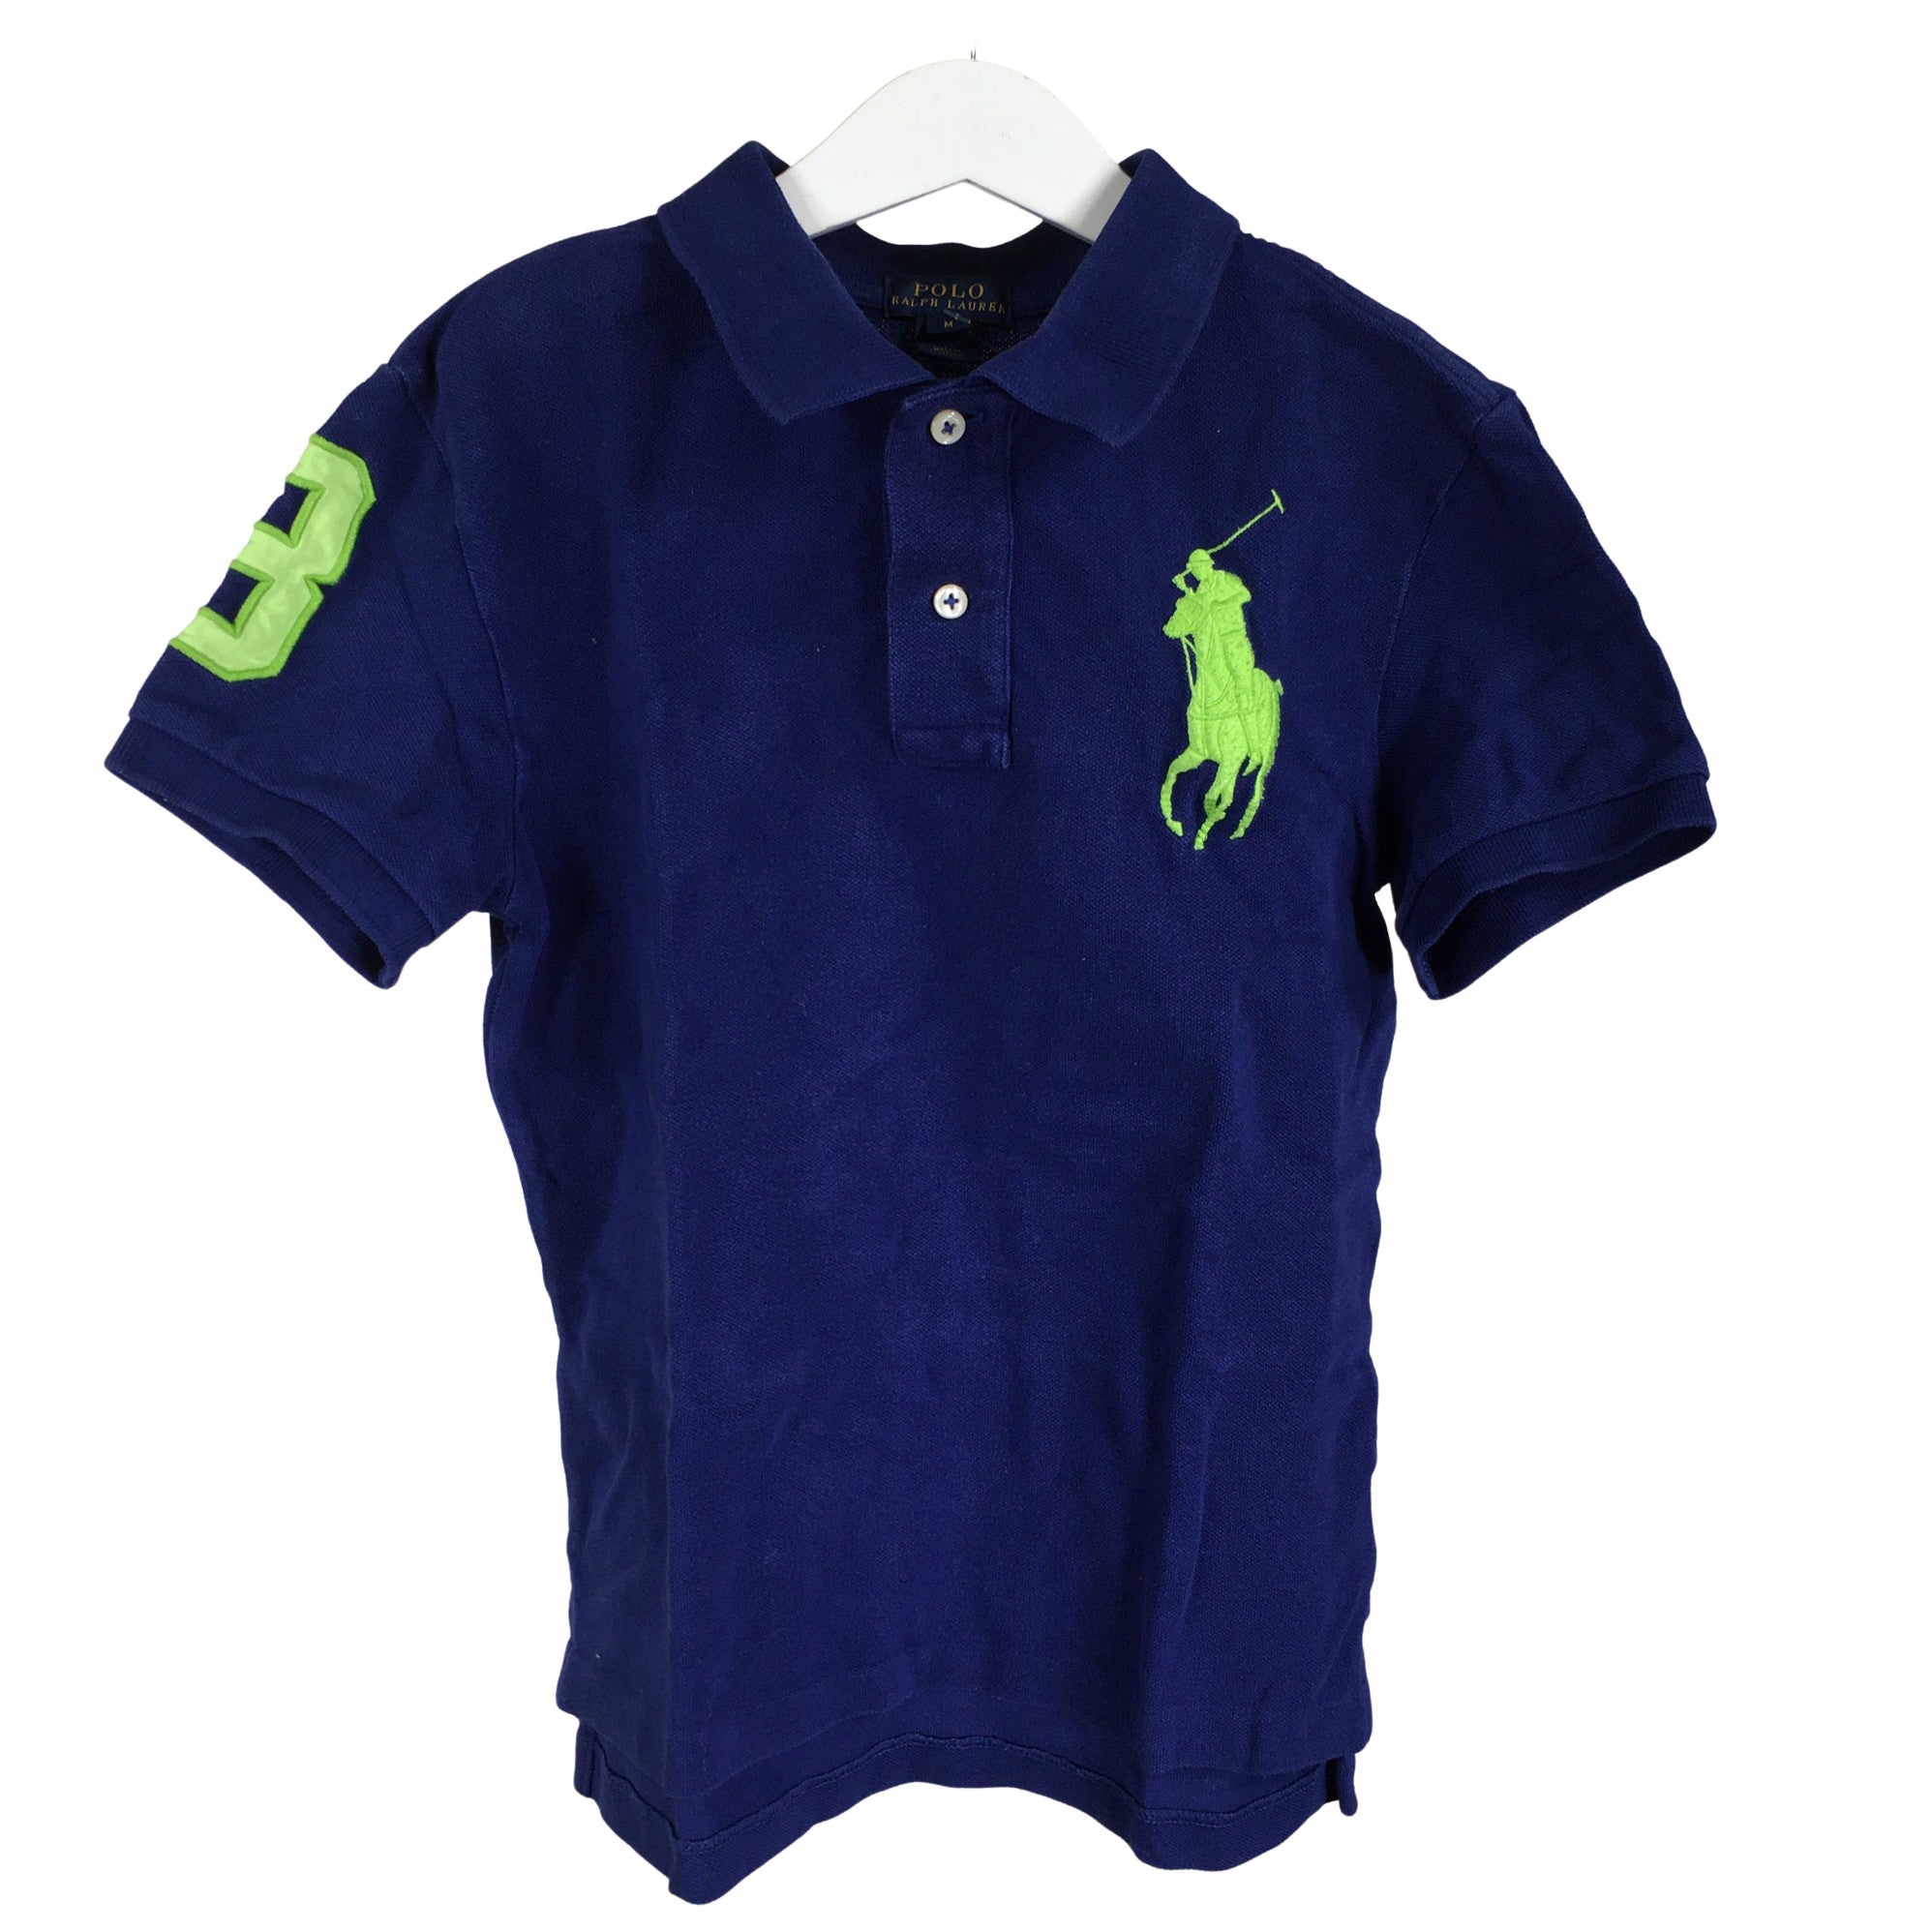 Boys' Ralph Lauren Polo shirt, size 146 - 152 (Blue) | Emmy